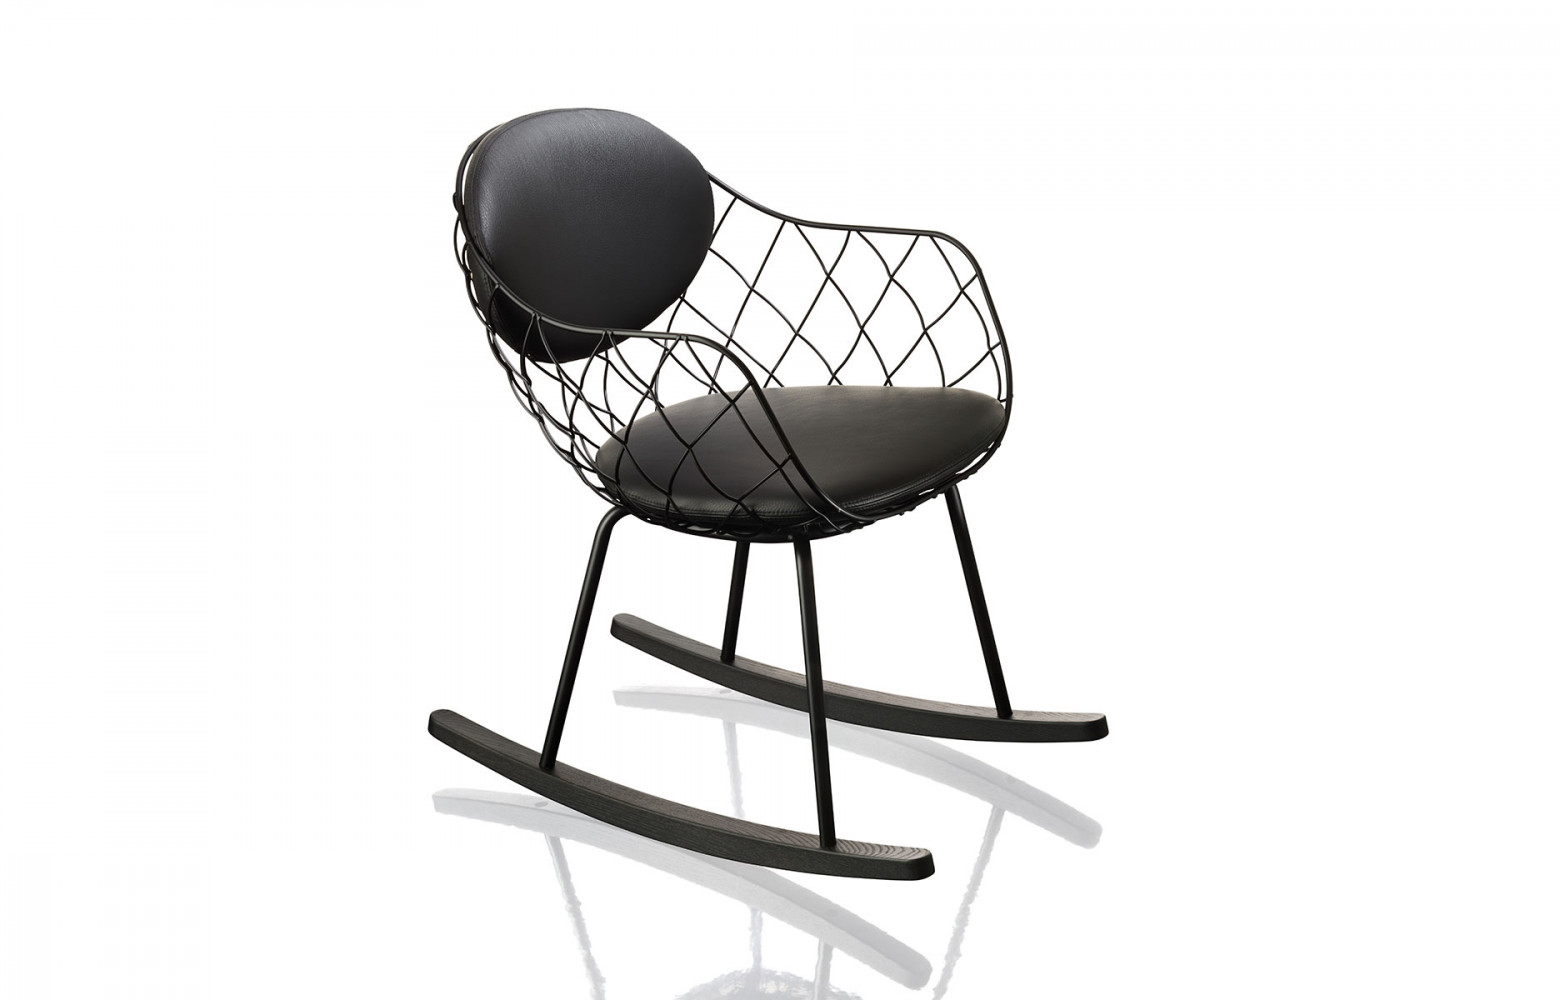 Rocking-chair Pina de Jaime Hayon (2014, Magis).